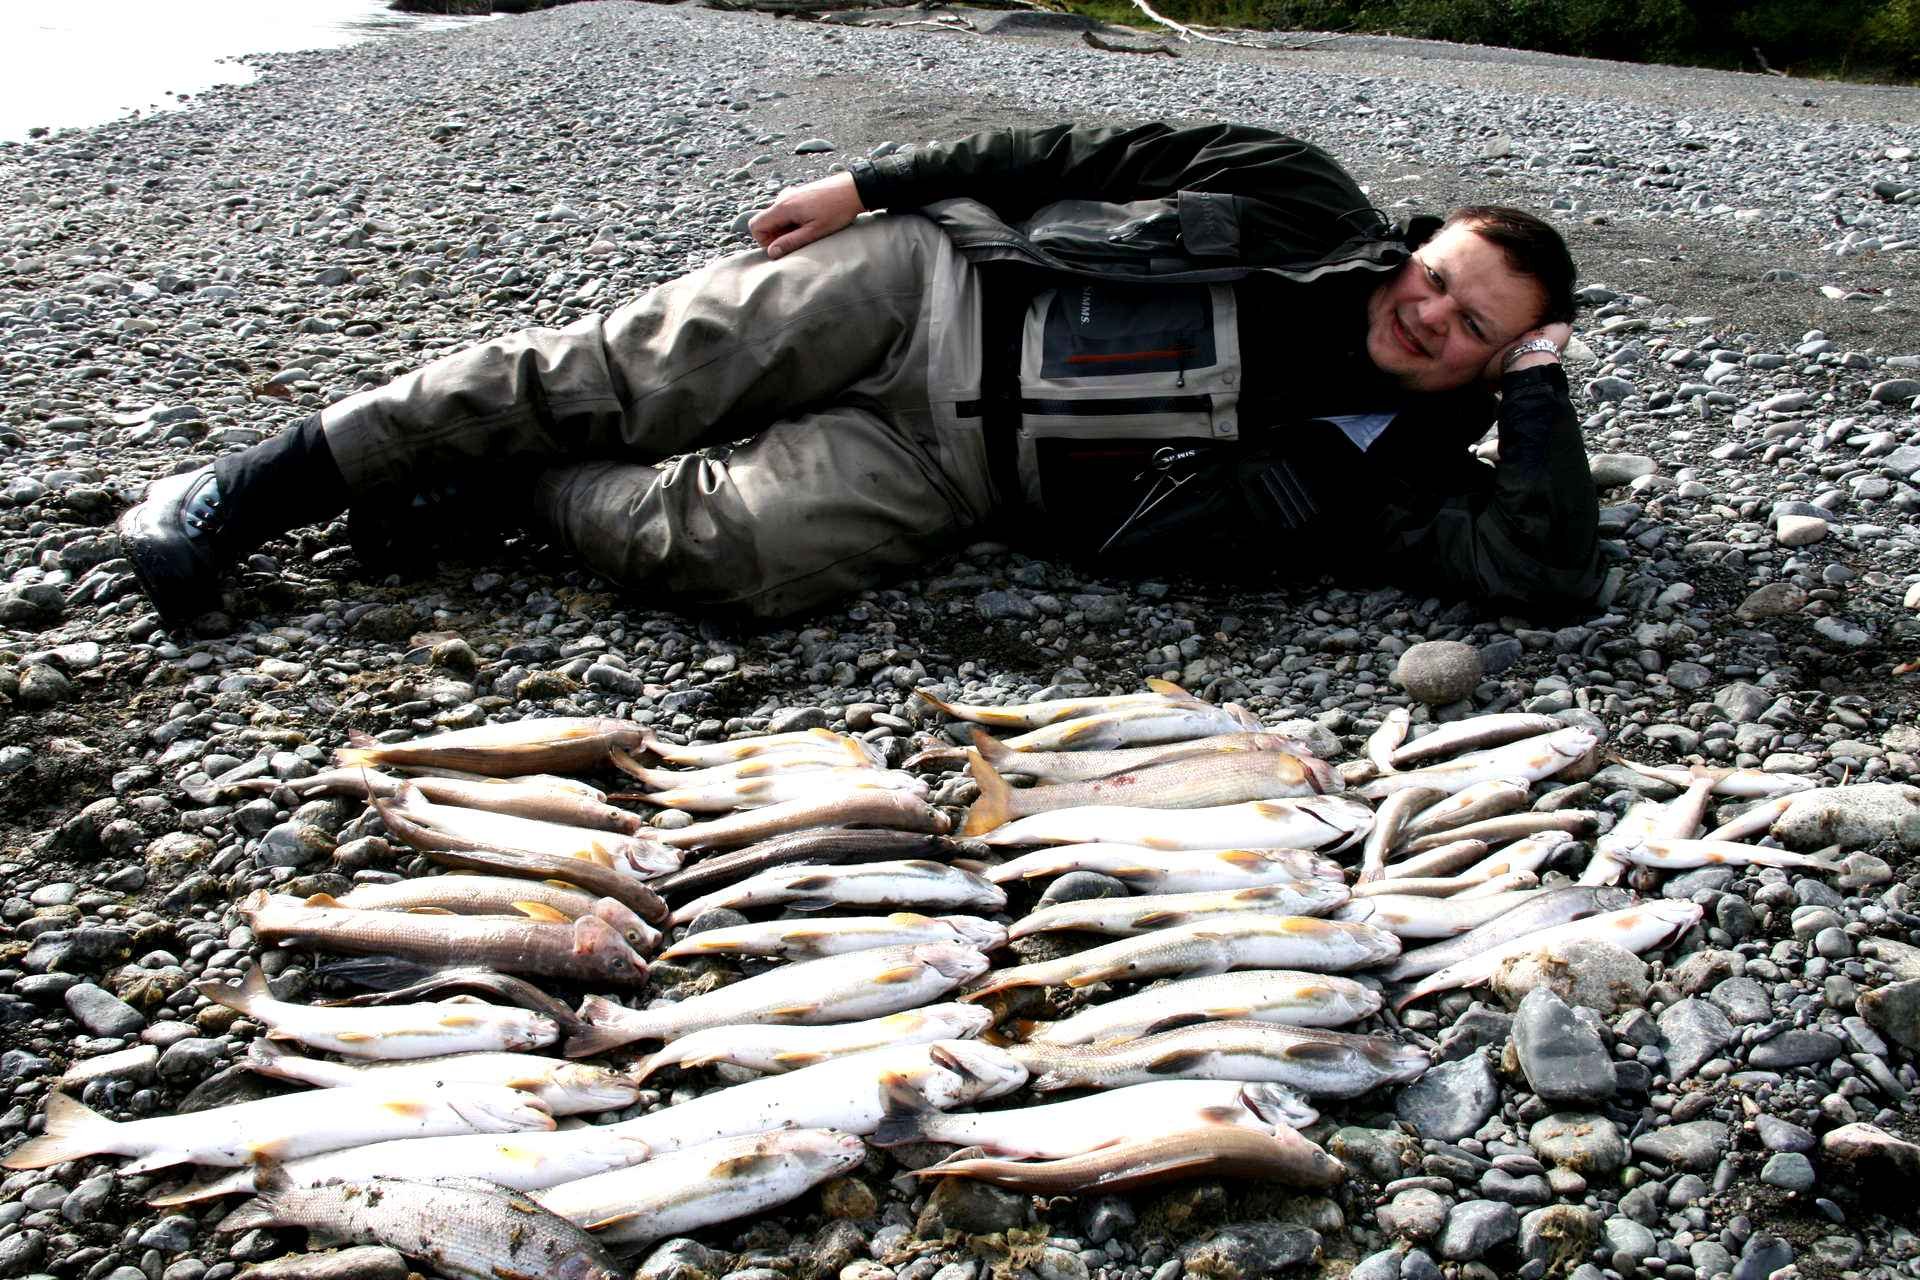 Работа рыбалки. Петропавловск-Камчатский рыбалка. Рыбалка на Камчатке. Охота и рыболовство. Рыба Камчатки.